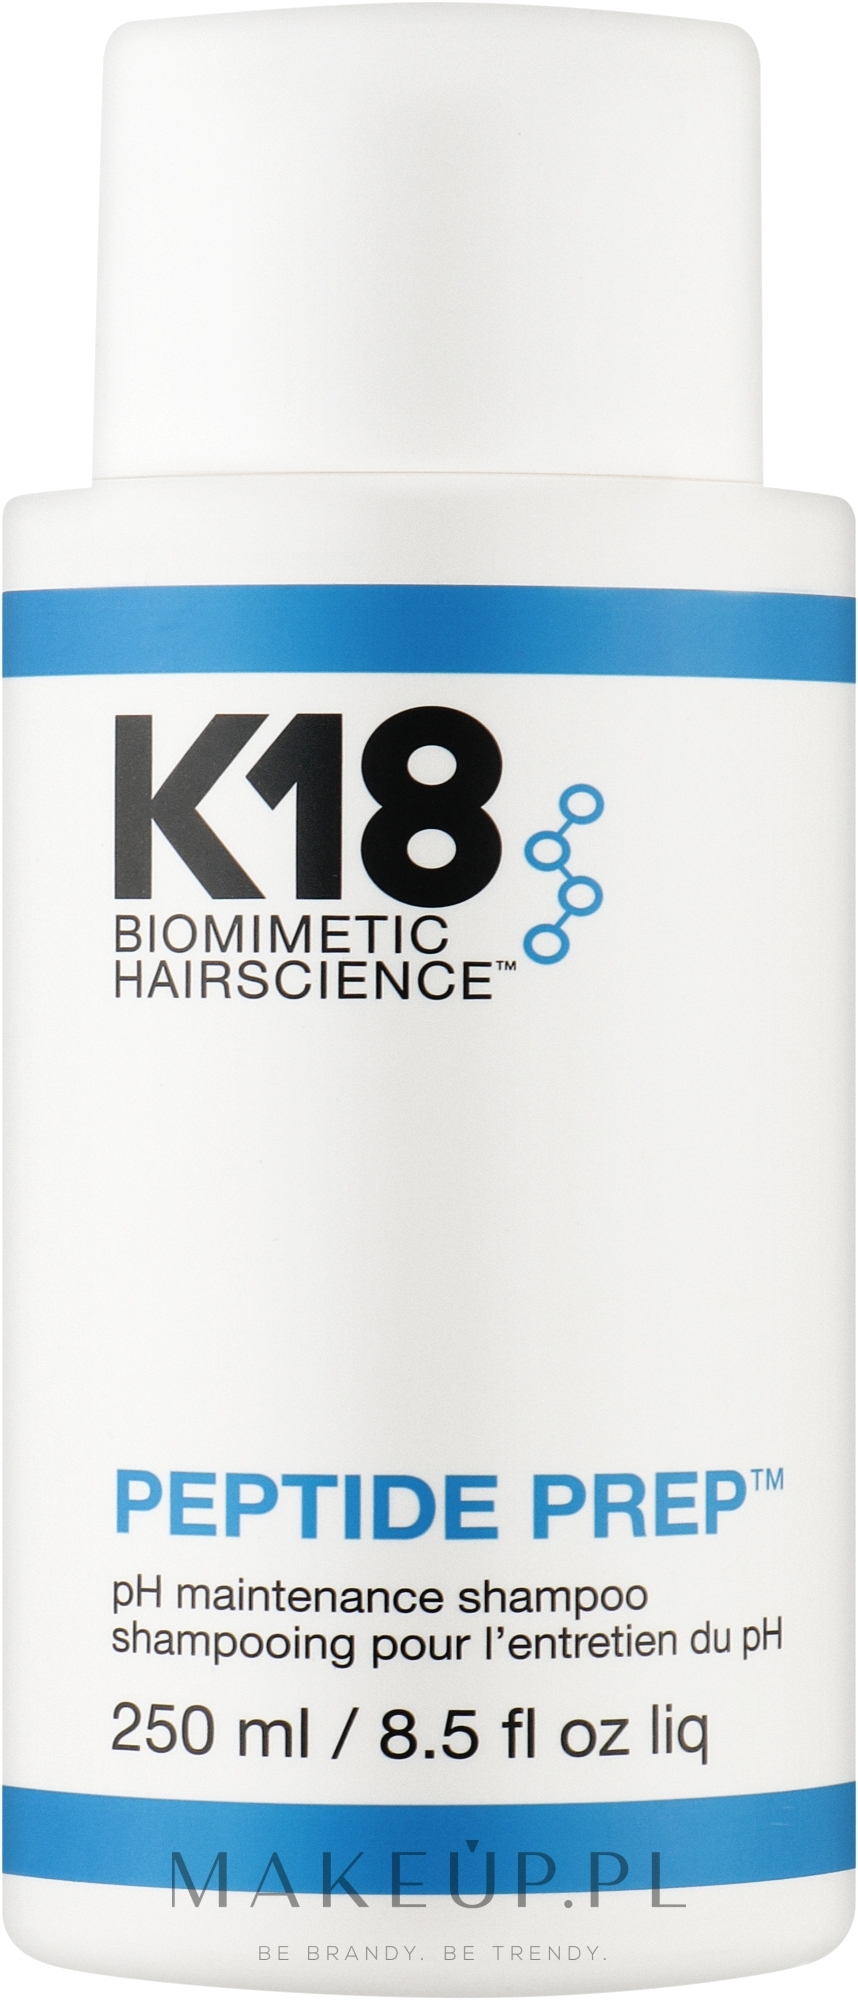 Szampon detoksykujący o optymalnym pH do częstego stosowania - K18 Hair Biomimetic Hairscience Peptide Prep PH Shampoo — Zdjęcie 250 ml